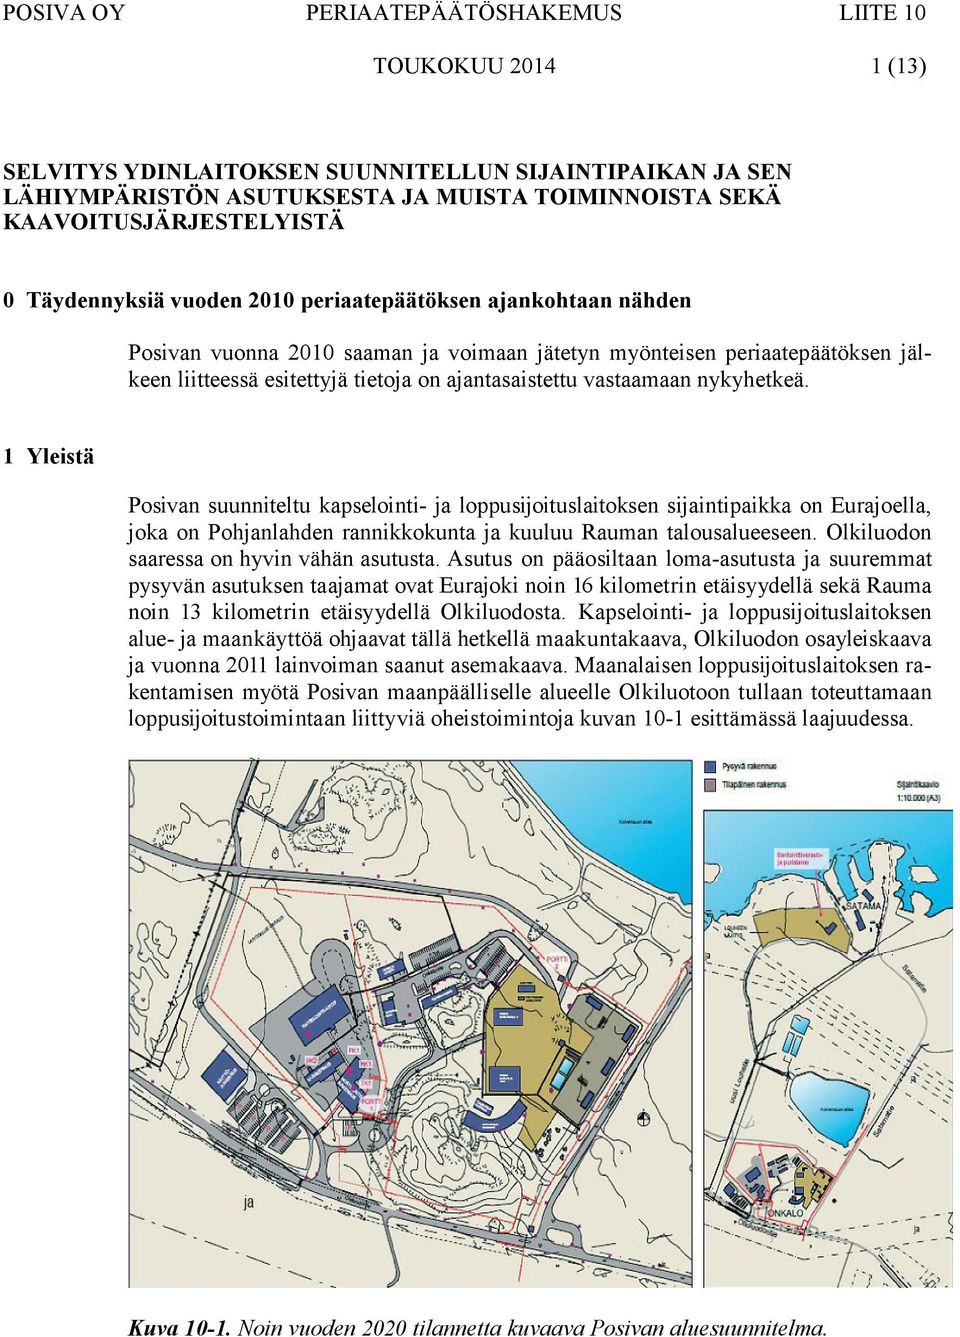 1 Yleistä Posivan suunniteltu kapselointi- ja loppusijoituslaitoksen sijaintipaikka on Eurajoella, joka on Pohjanlahden rannikkokunta ja kuuluu Rauman talousalueeseen.